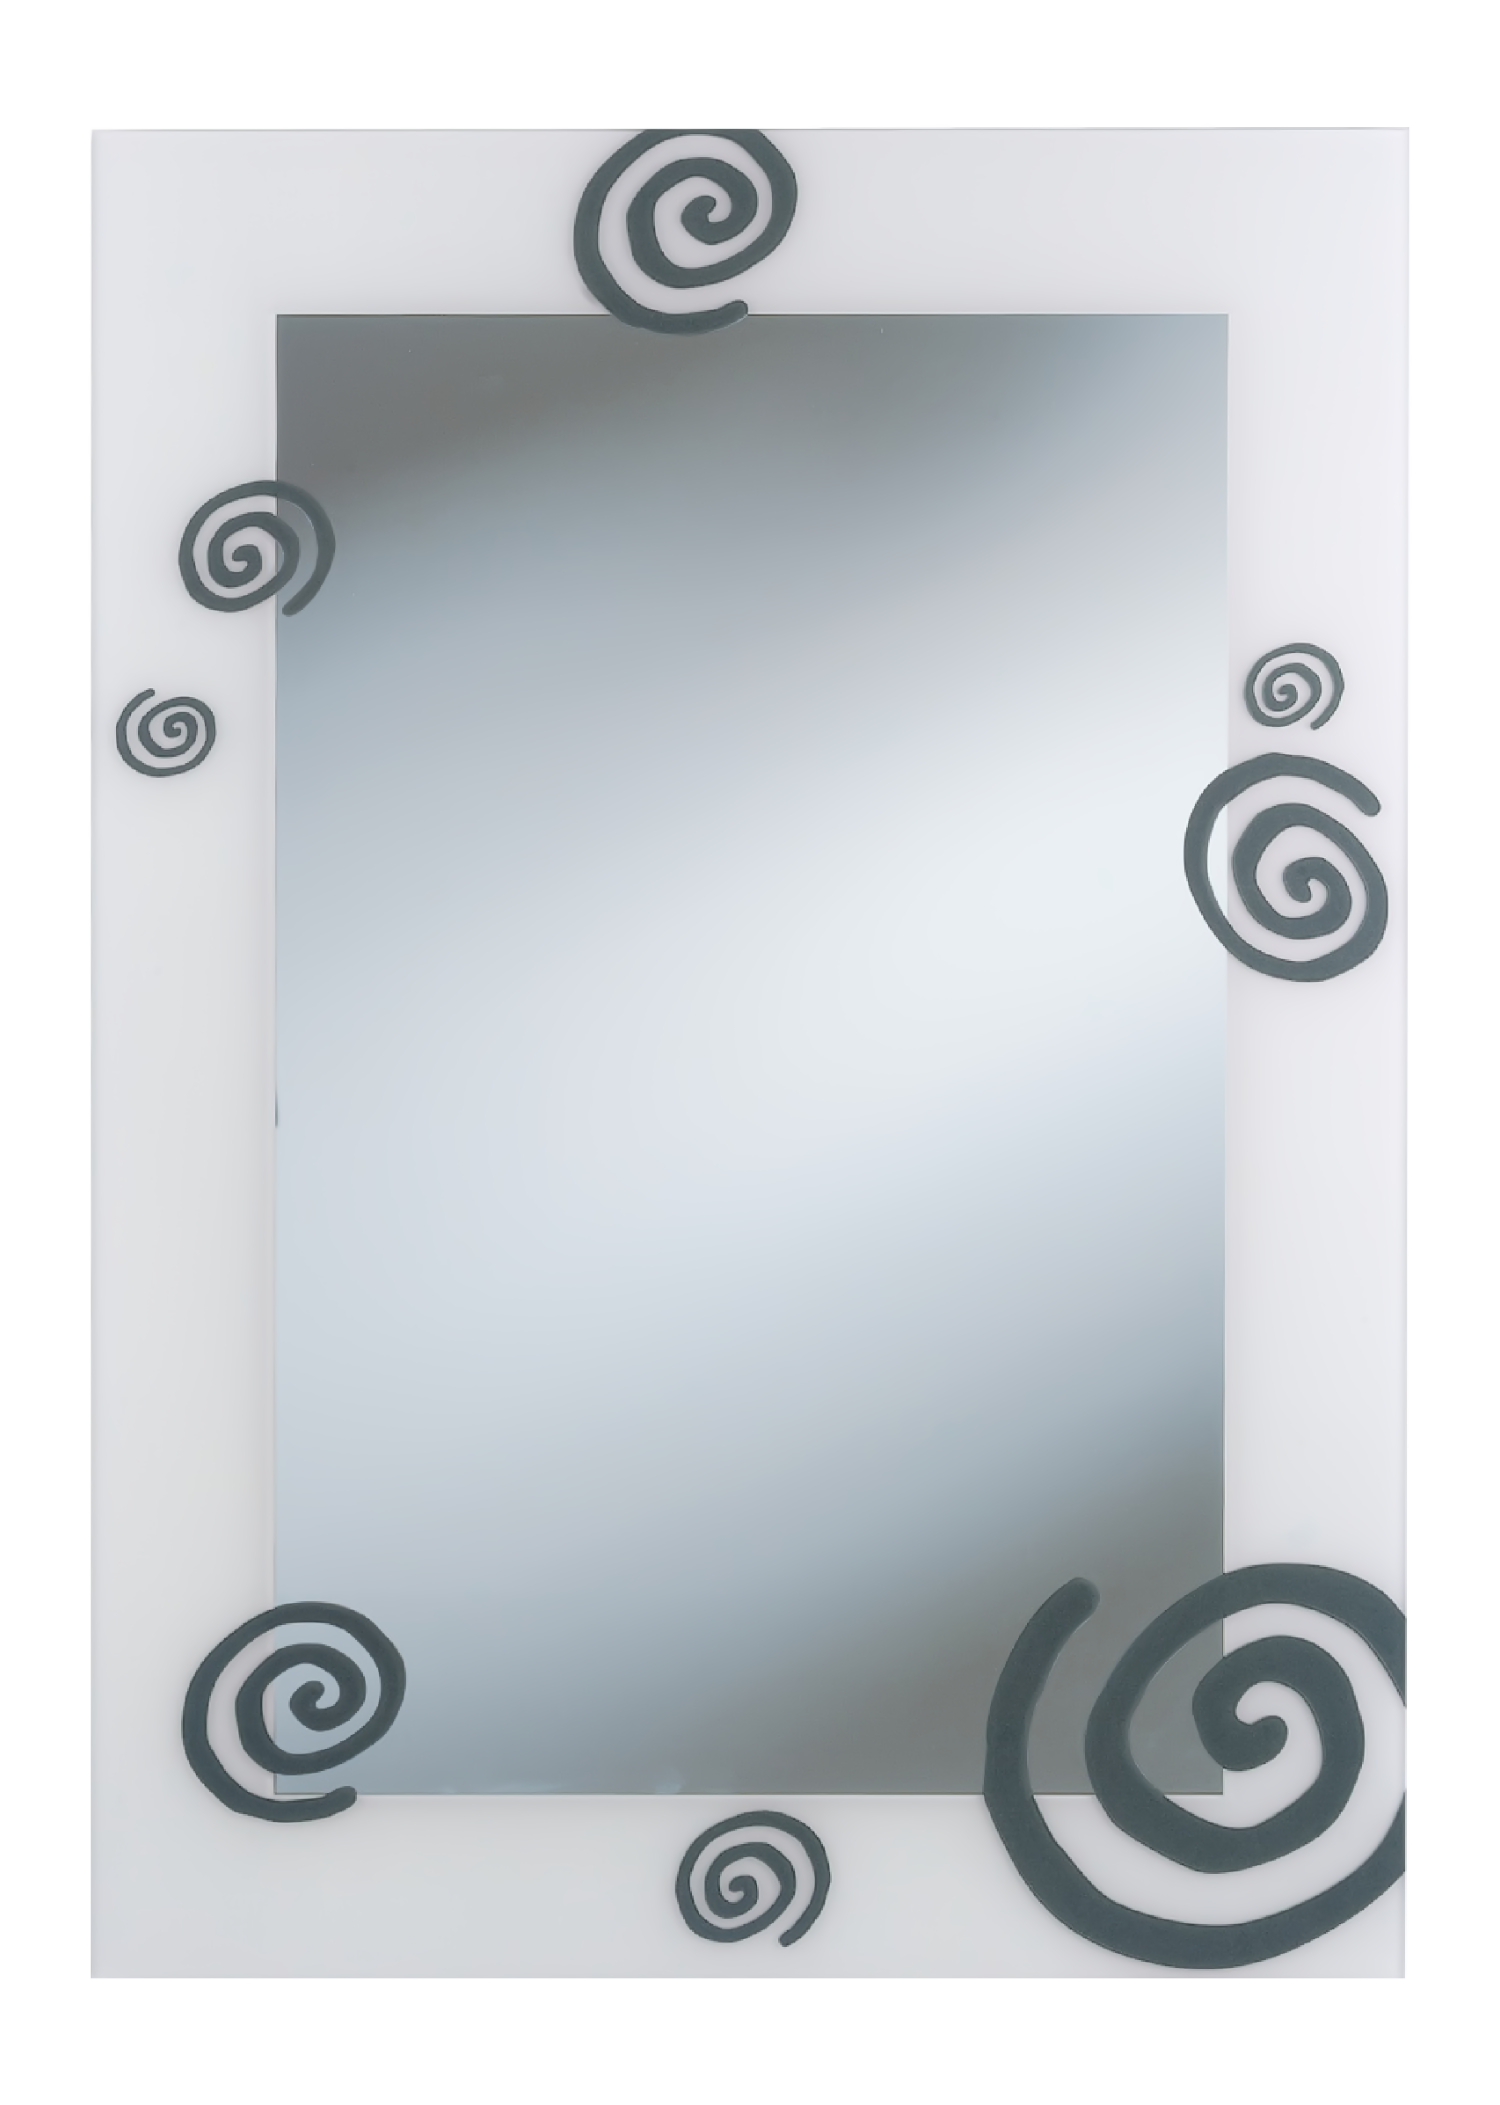 Siebdruckspiegel Realto 50 X 70 cm, anthrazit, incl. Aufhängung